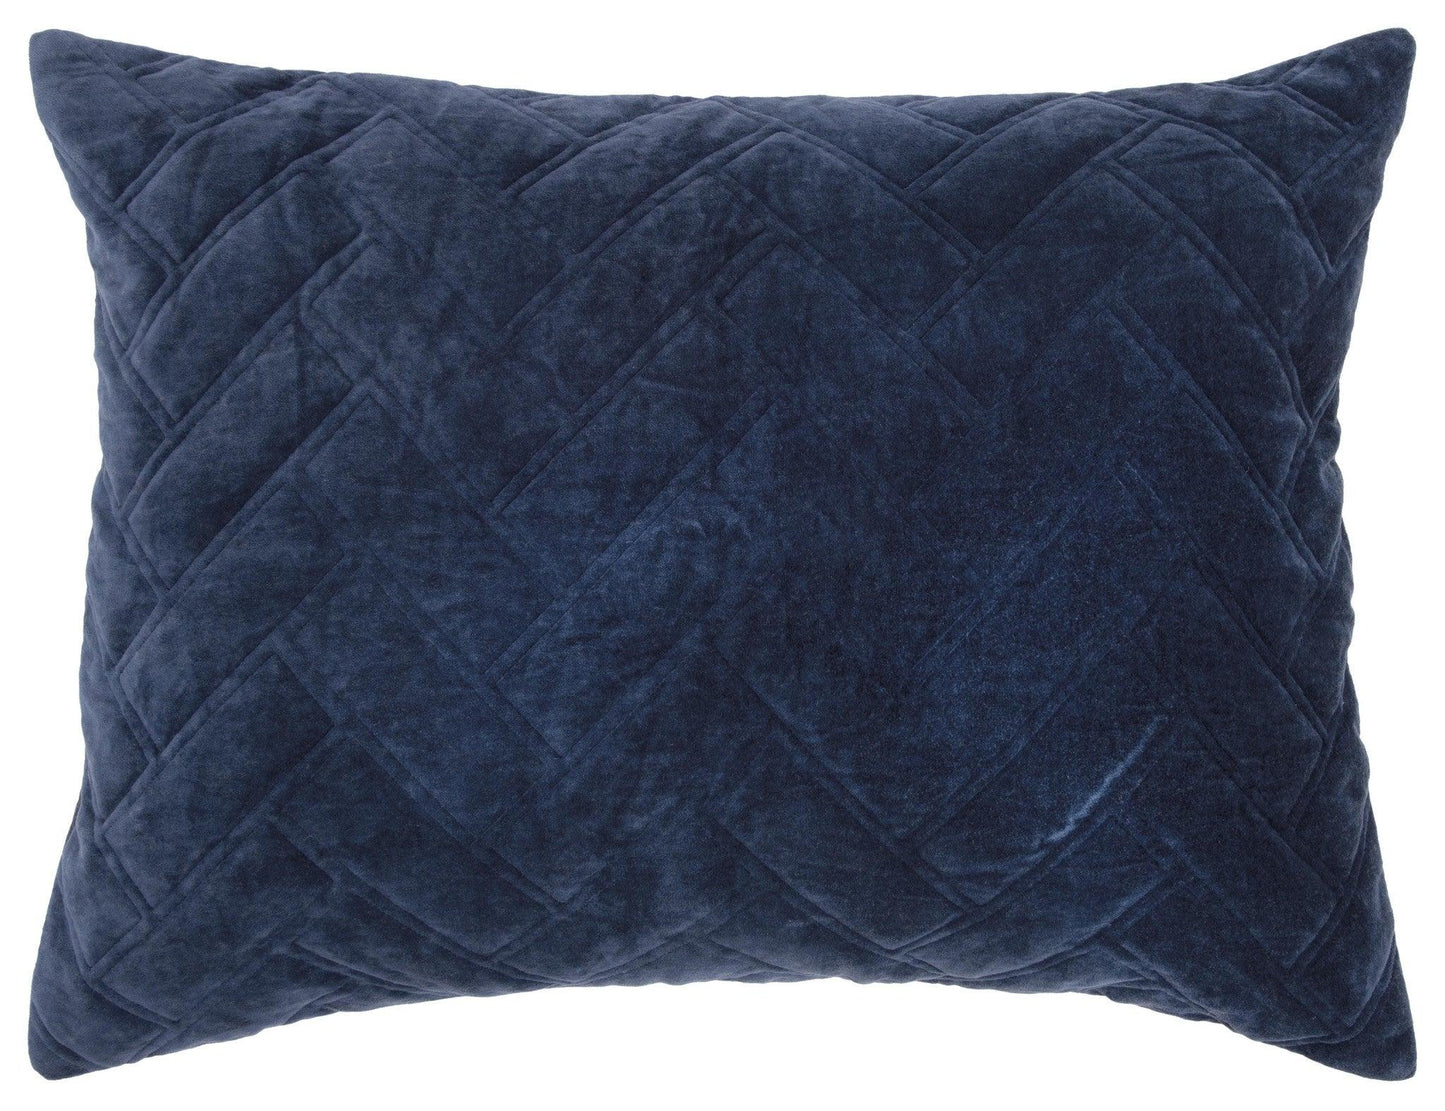 Indigo Queen 100% Cotton 300 Thread Count Dry Clean Only Down Alternative Comforter - FurniFindUSA